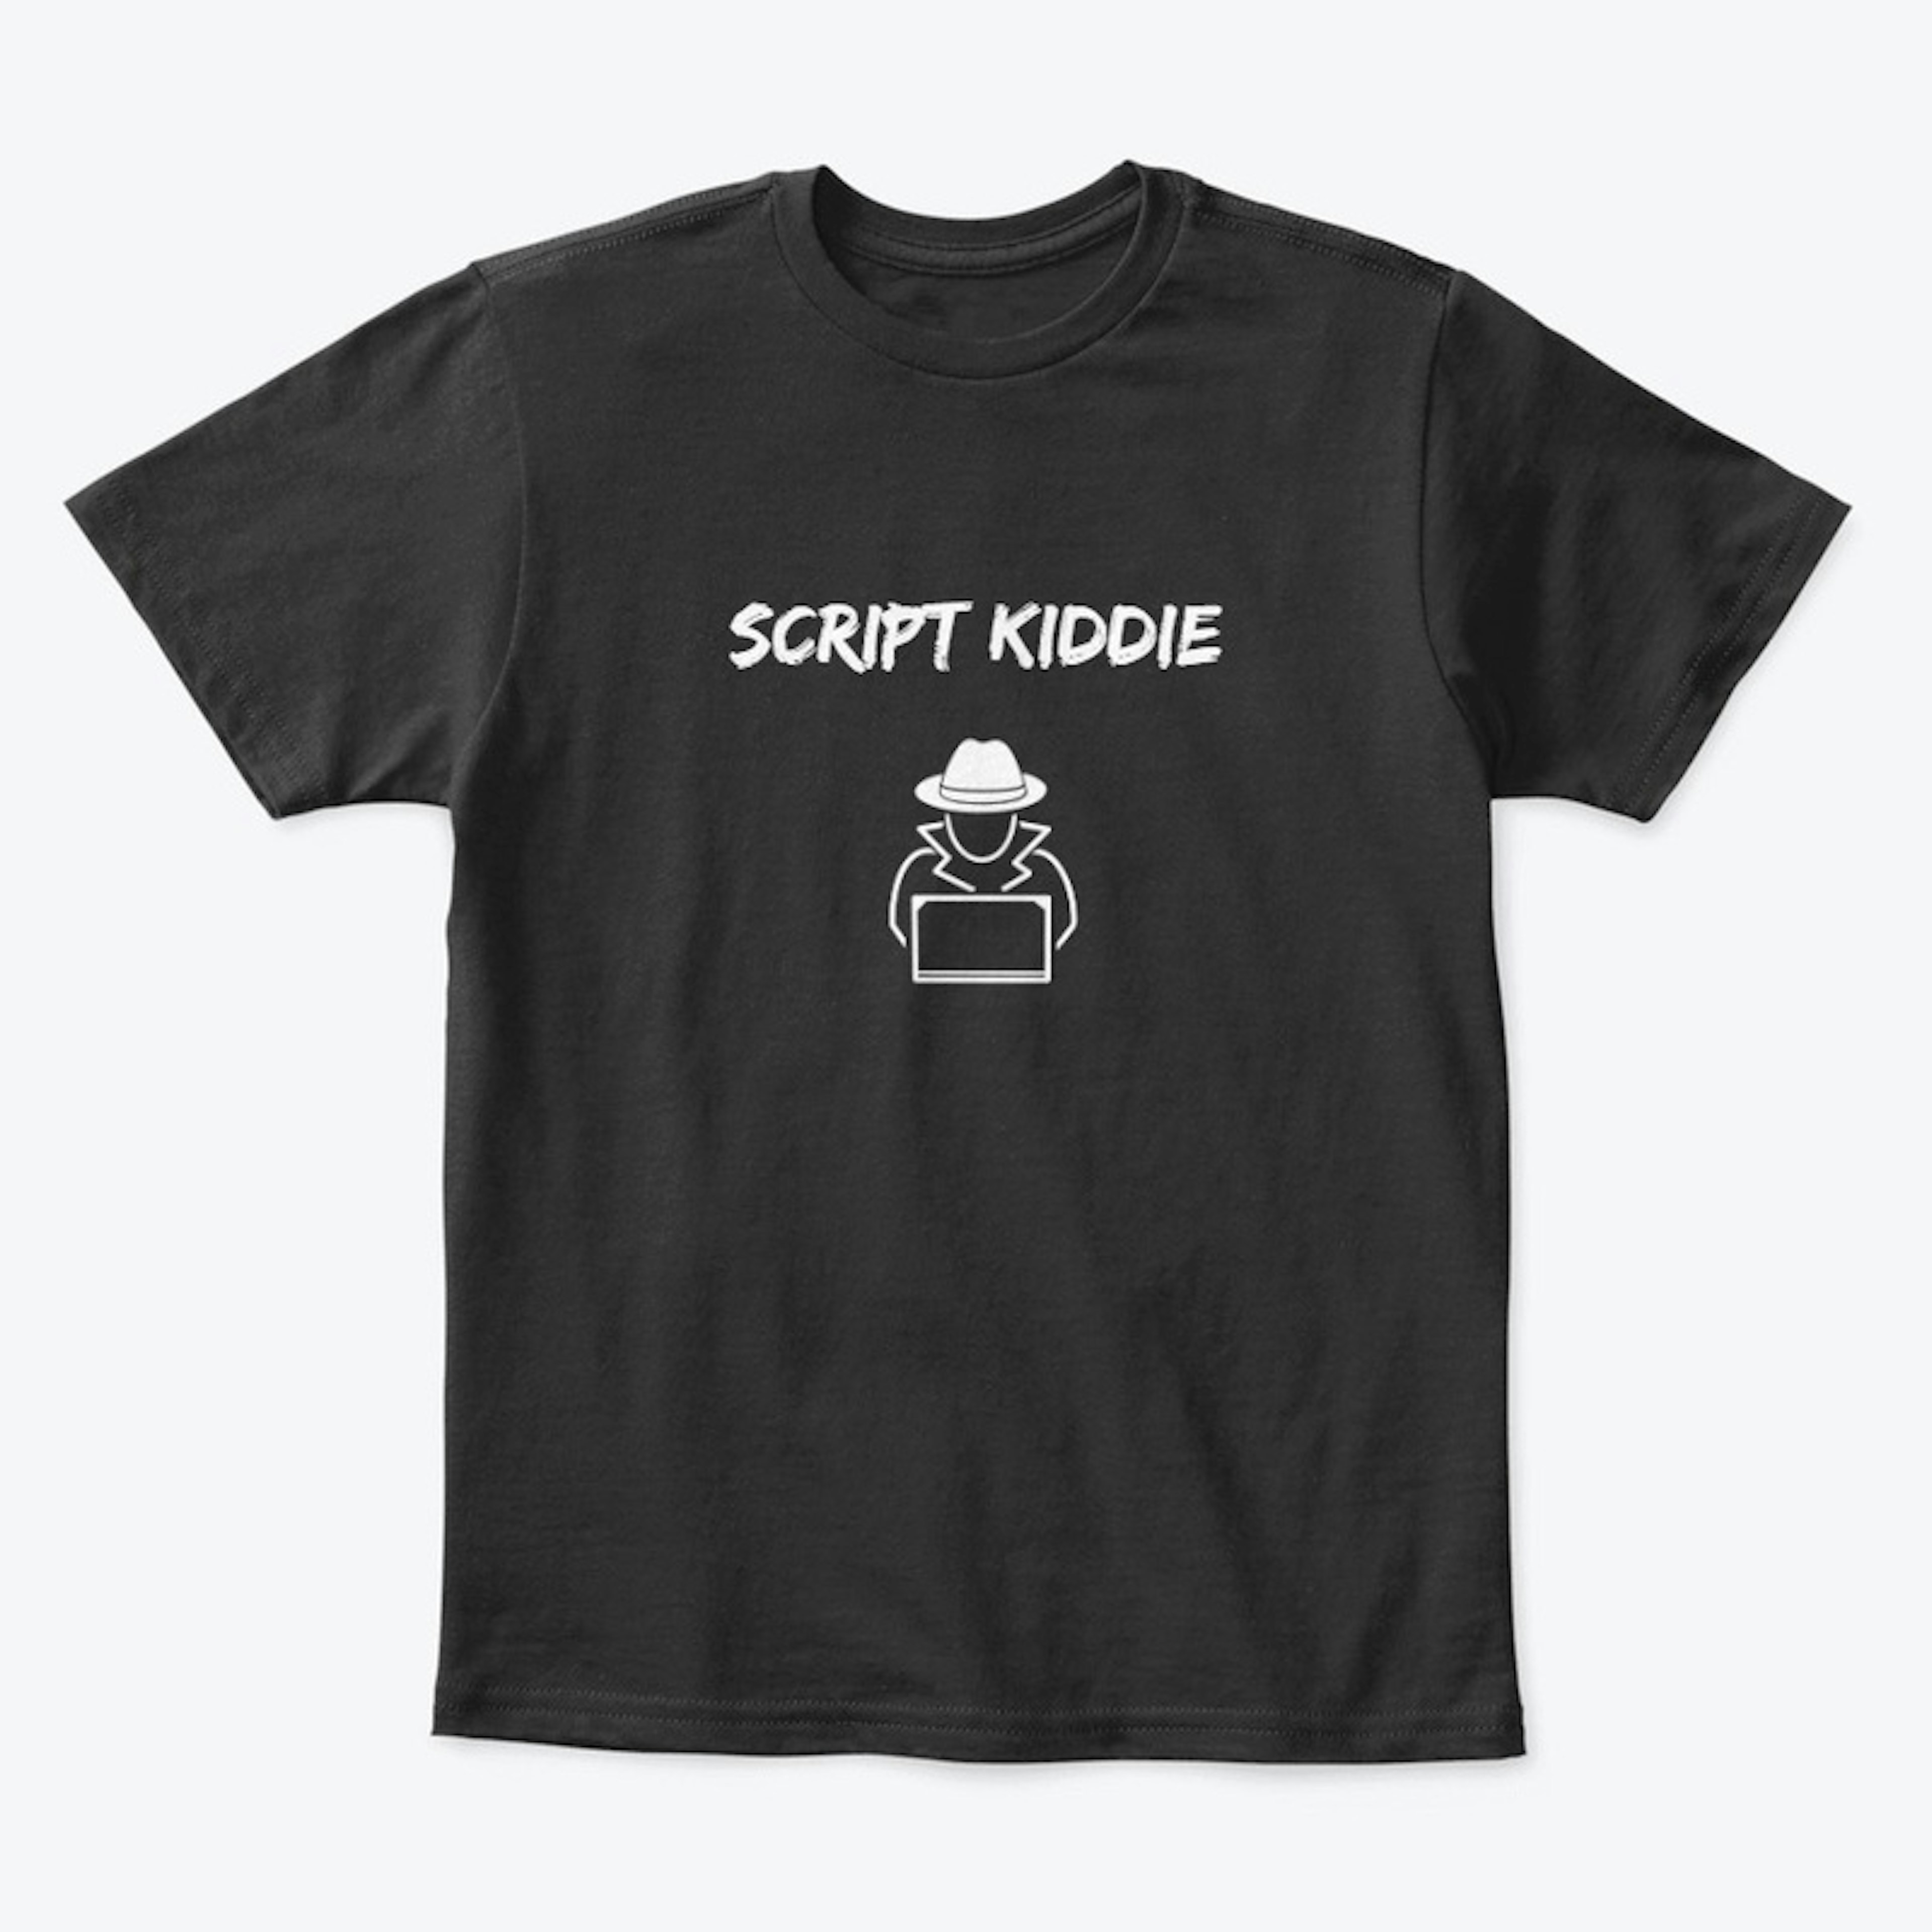 Script Kiddie shirts for Kids